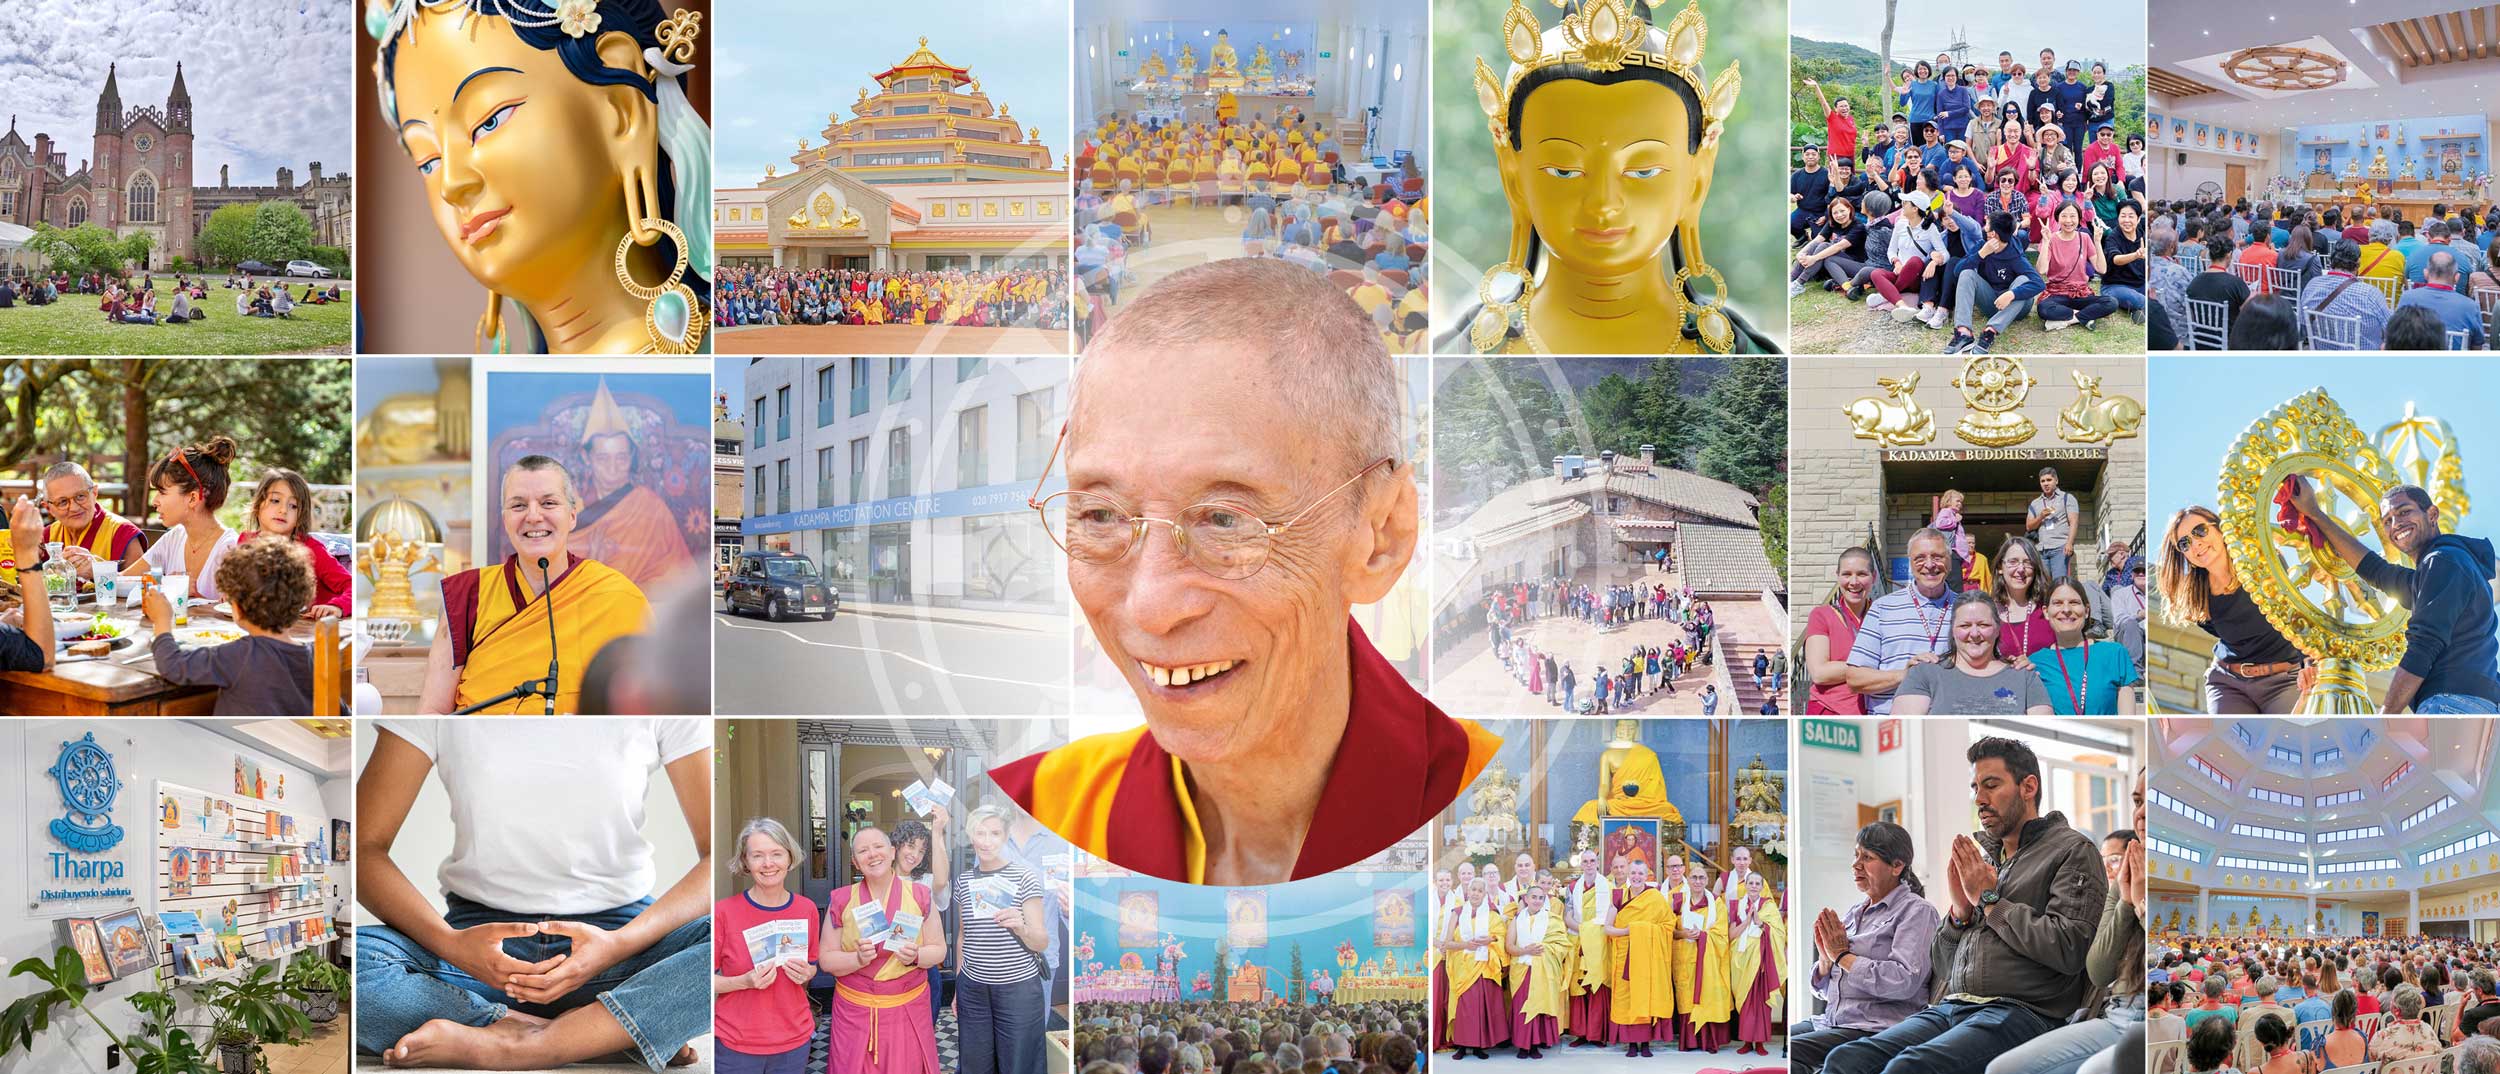 New Kadampa Tradition – International Kadampa Buddhist Union